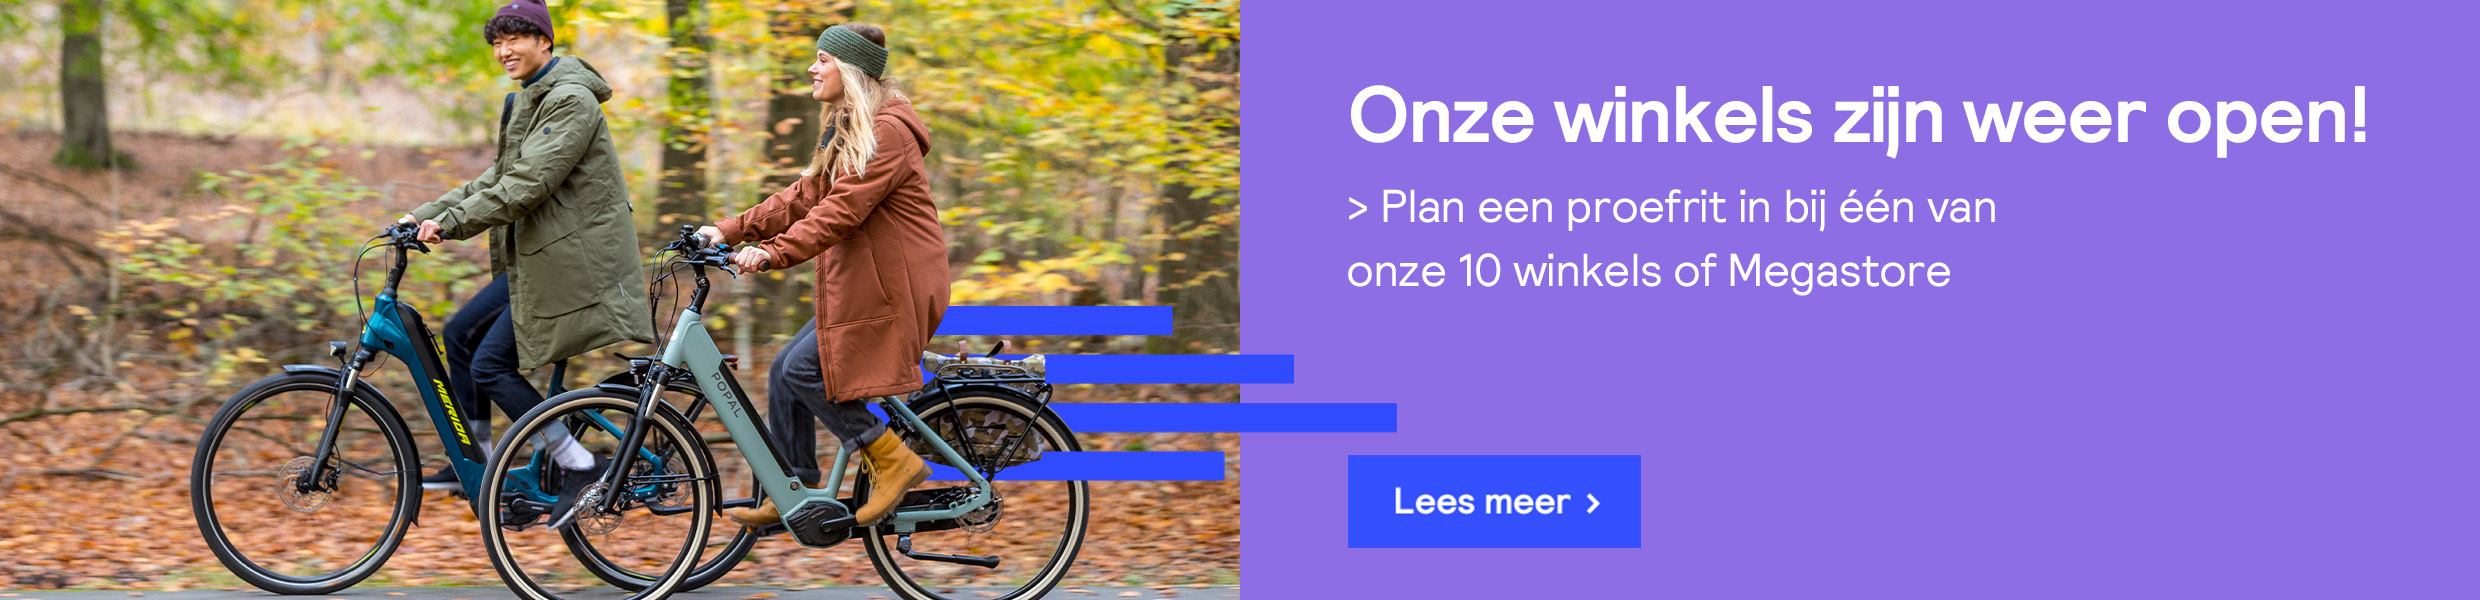 De grootste e-bike winkel van Nederland